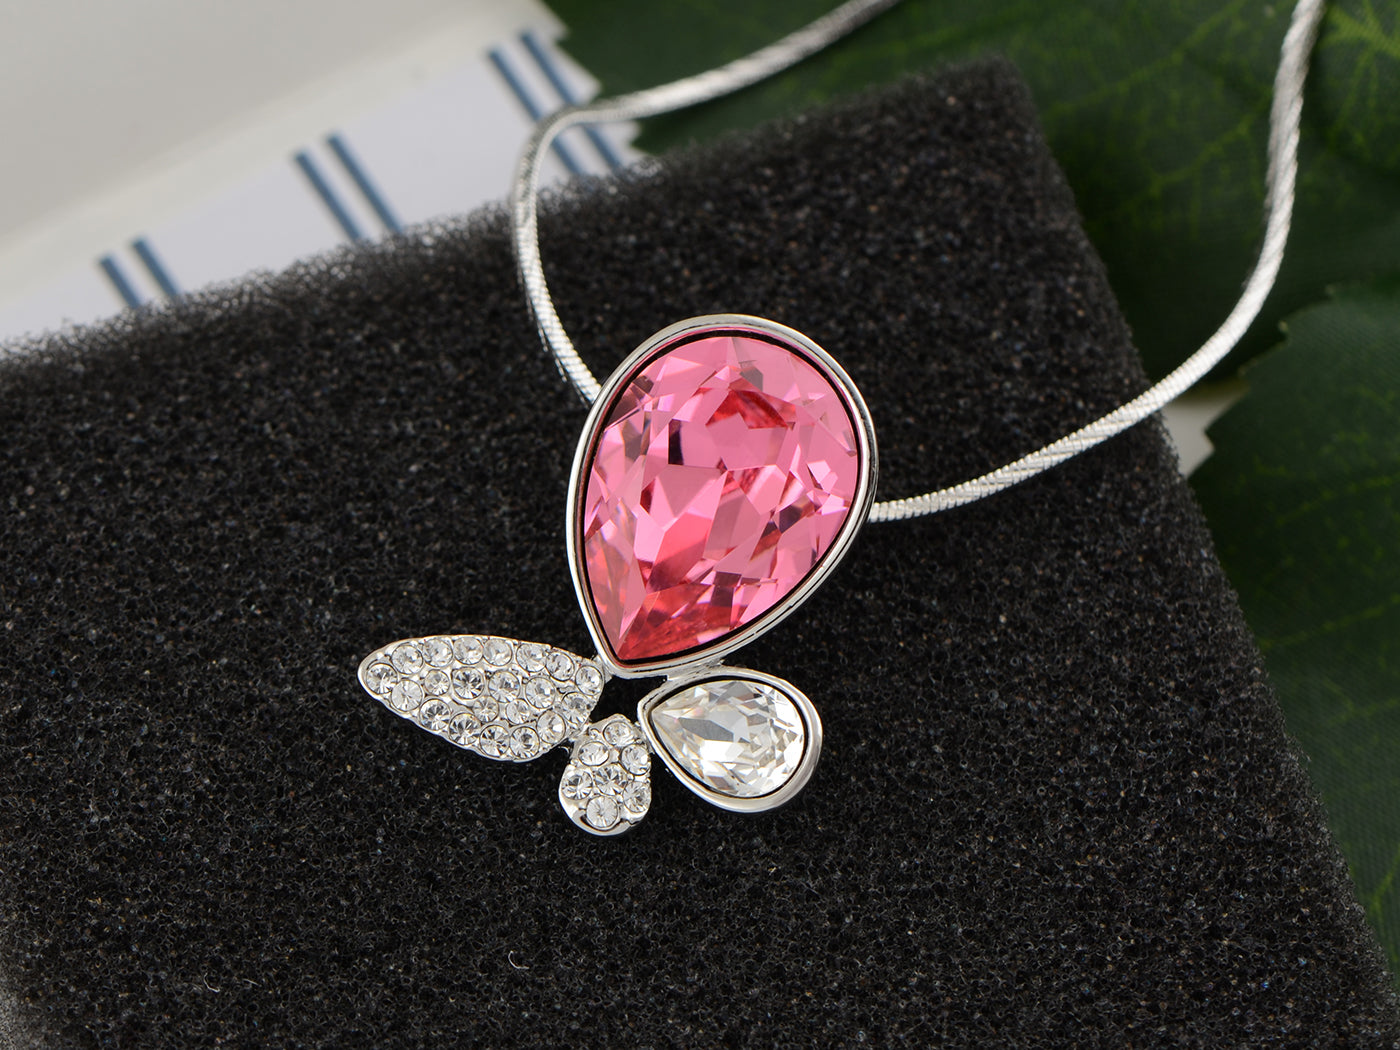 Swarovski Crystal Butterfly Necklace Item 1739 - Etsy | Beautiful necklaces,  Swarovski crystals, Malachite pendant